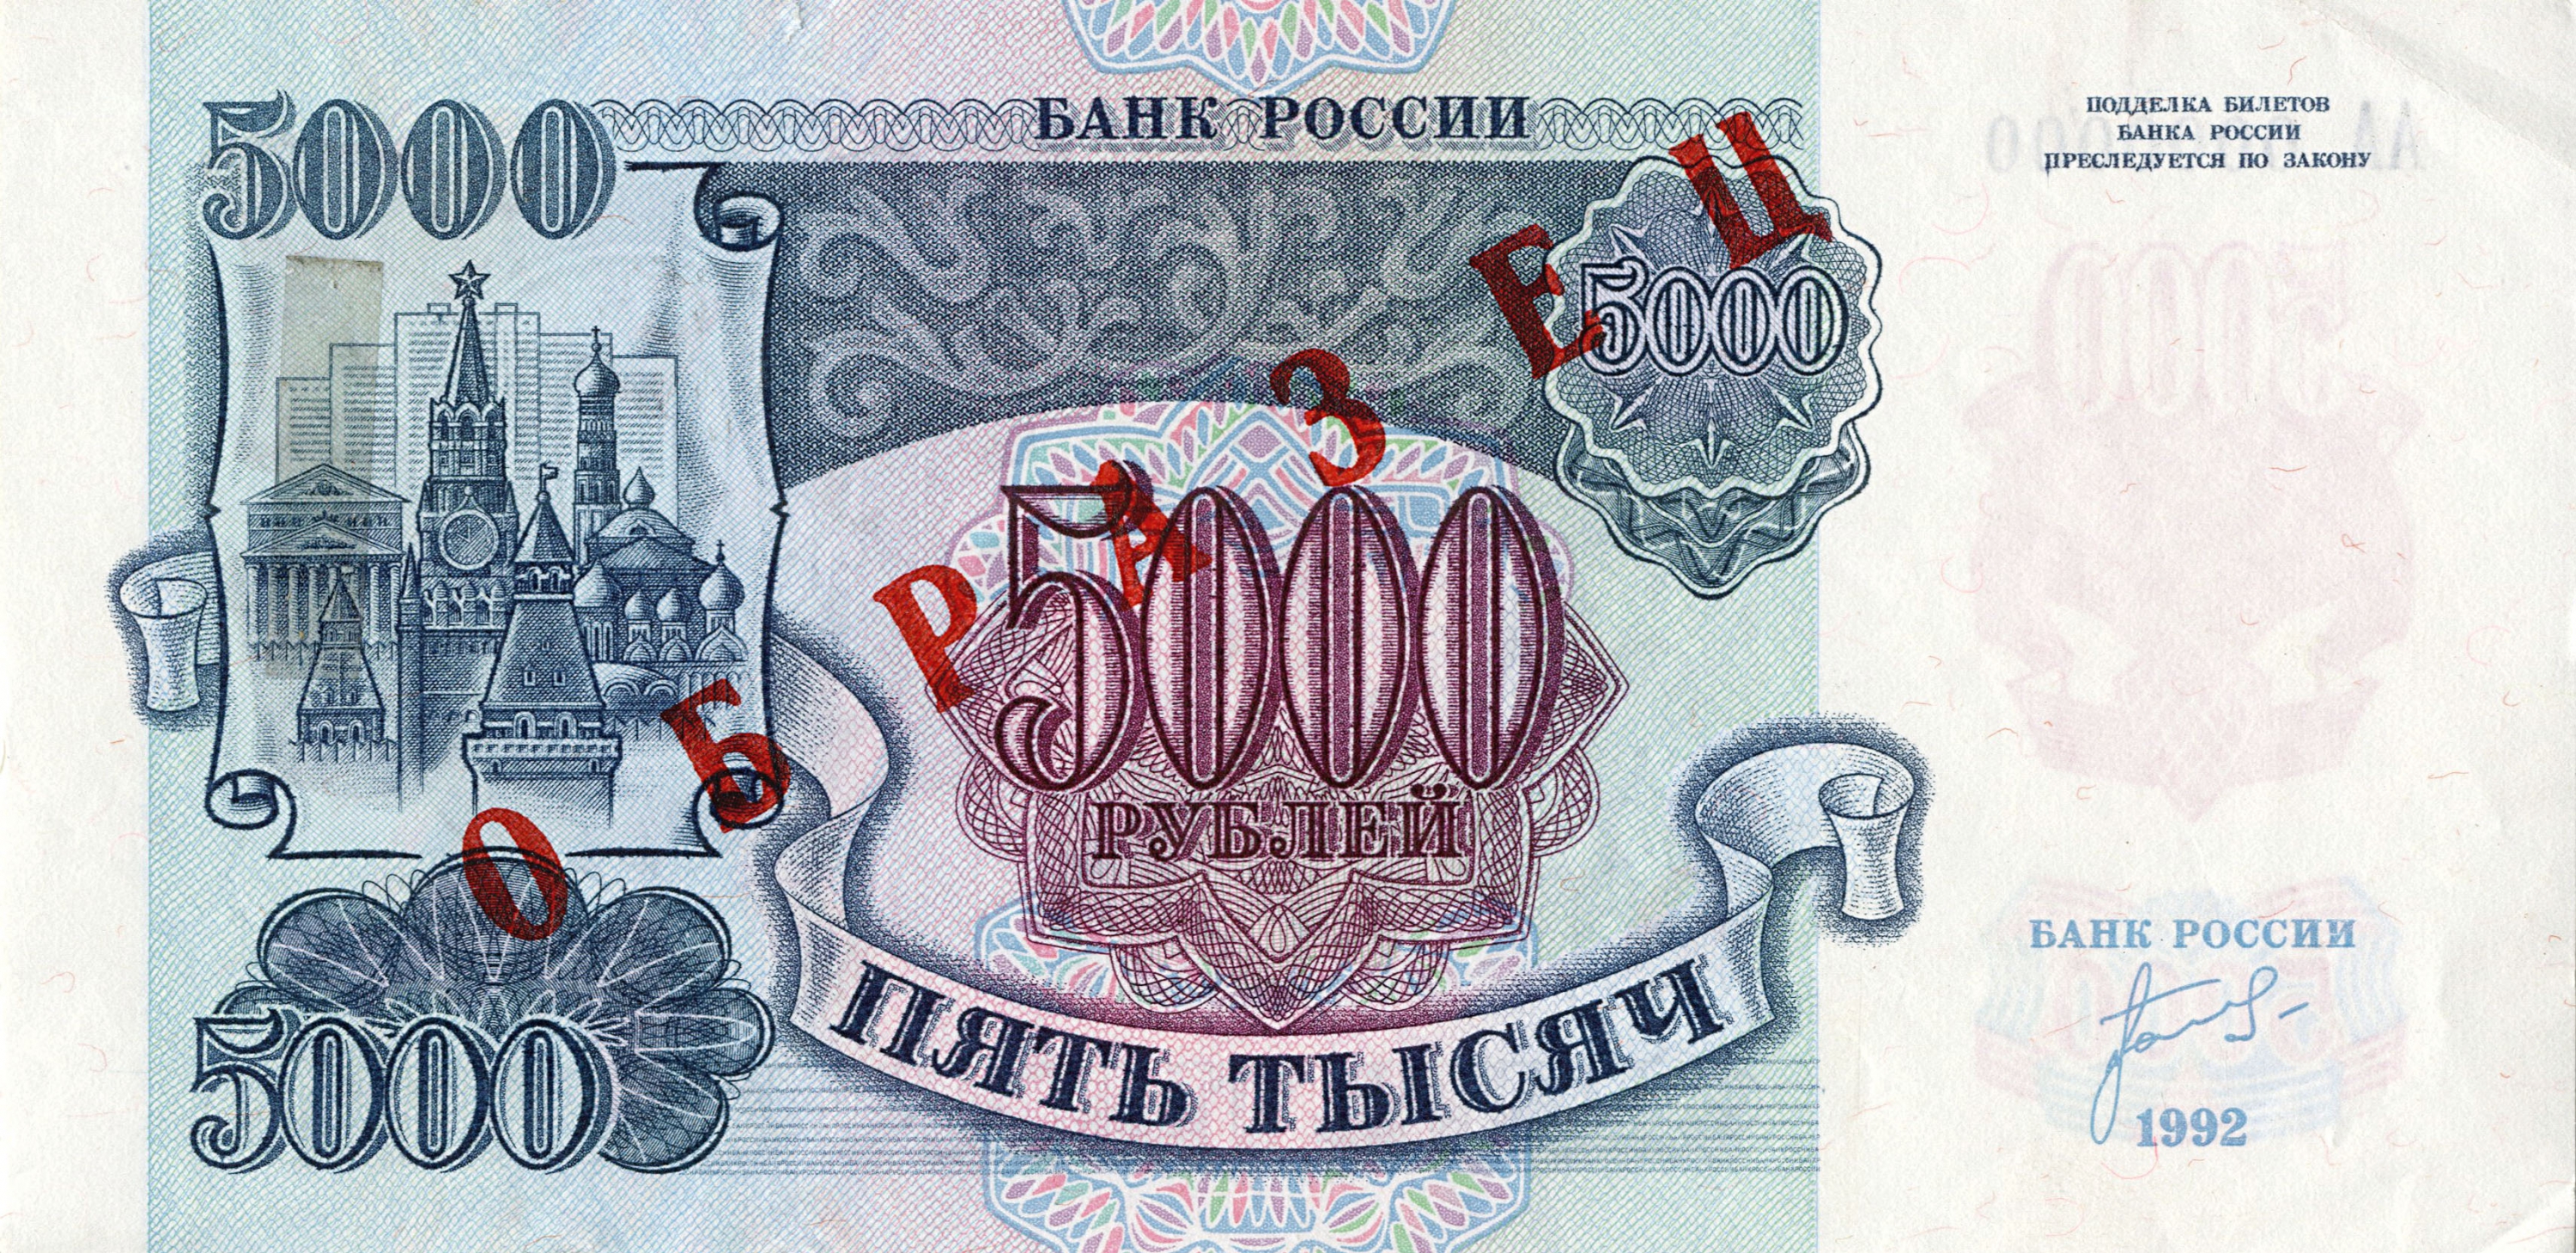 5000 российских рублей